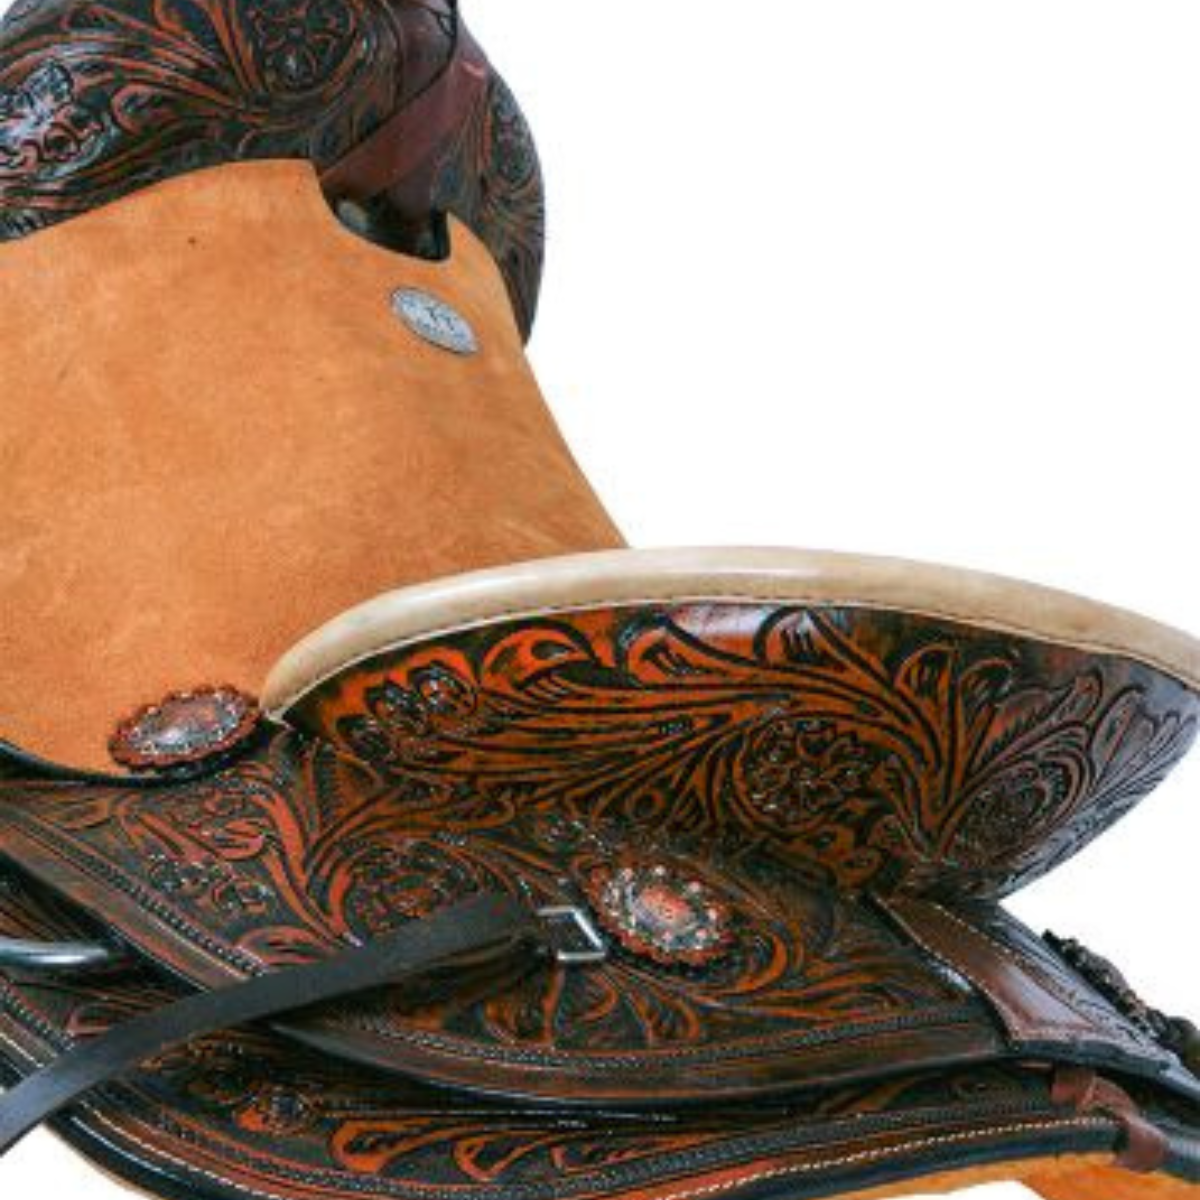 14", 15" DOUBLE T HARD SEAT ROPER SADDLE - Double T Saddles